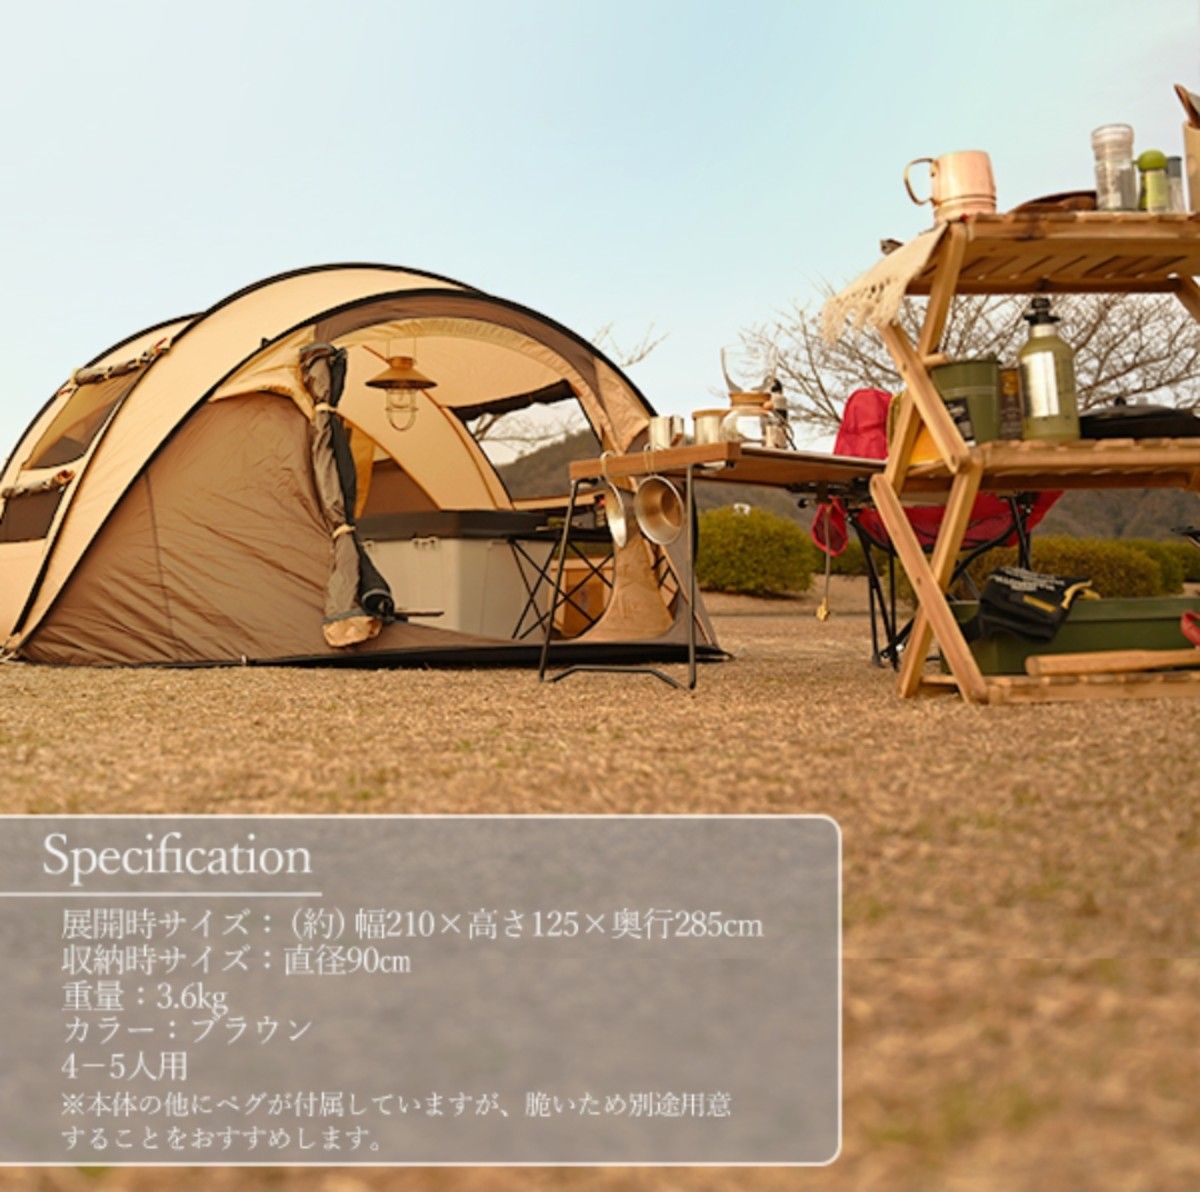 大型 ワンタッチテント ファミリー ポップアップテント 簡易テント